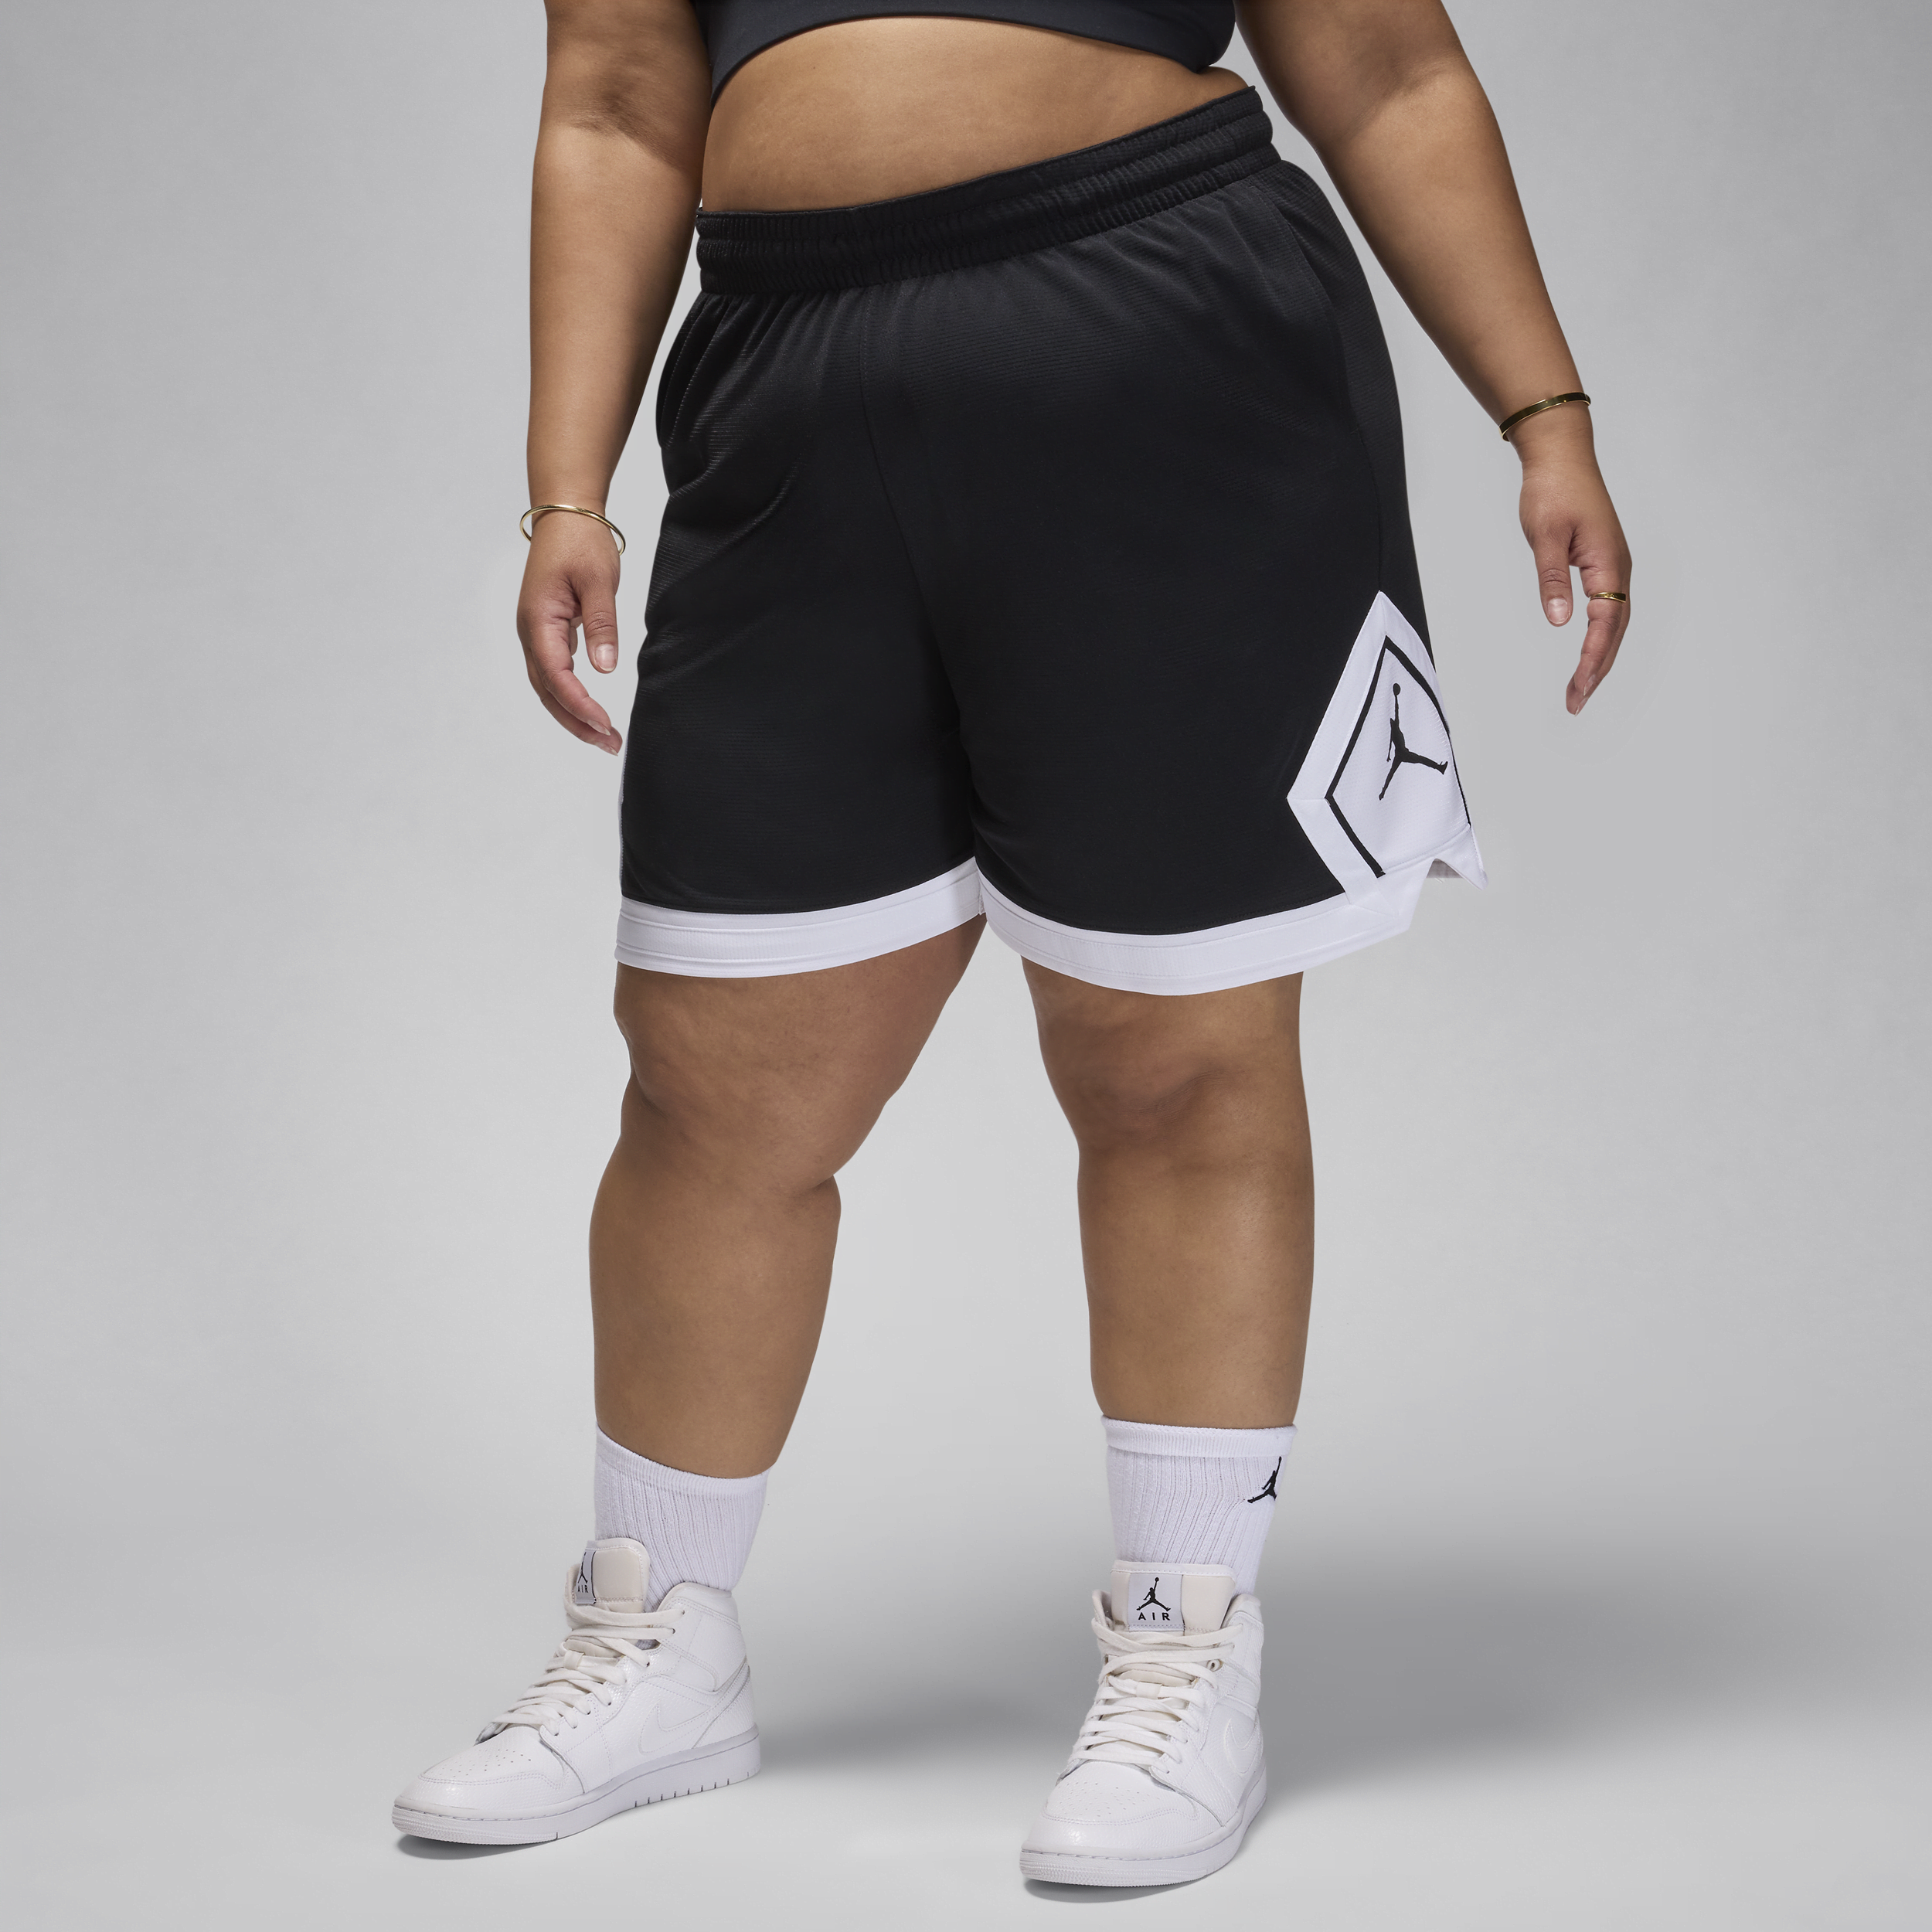 Jordan Sport-Diamond-shorts (plus size) til kvinder - sort